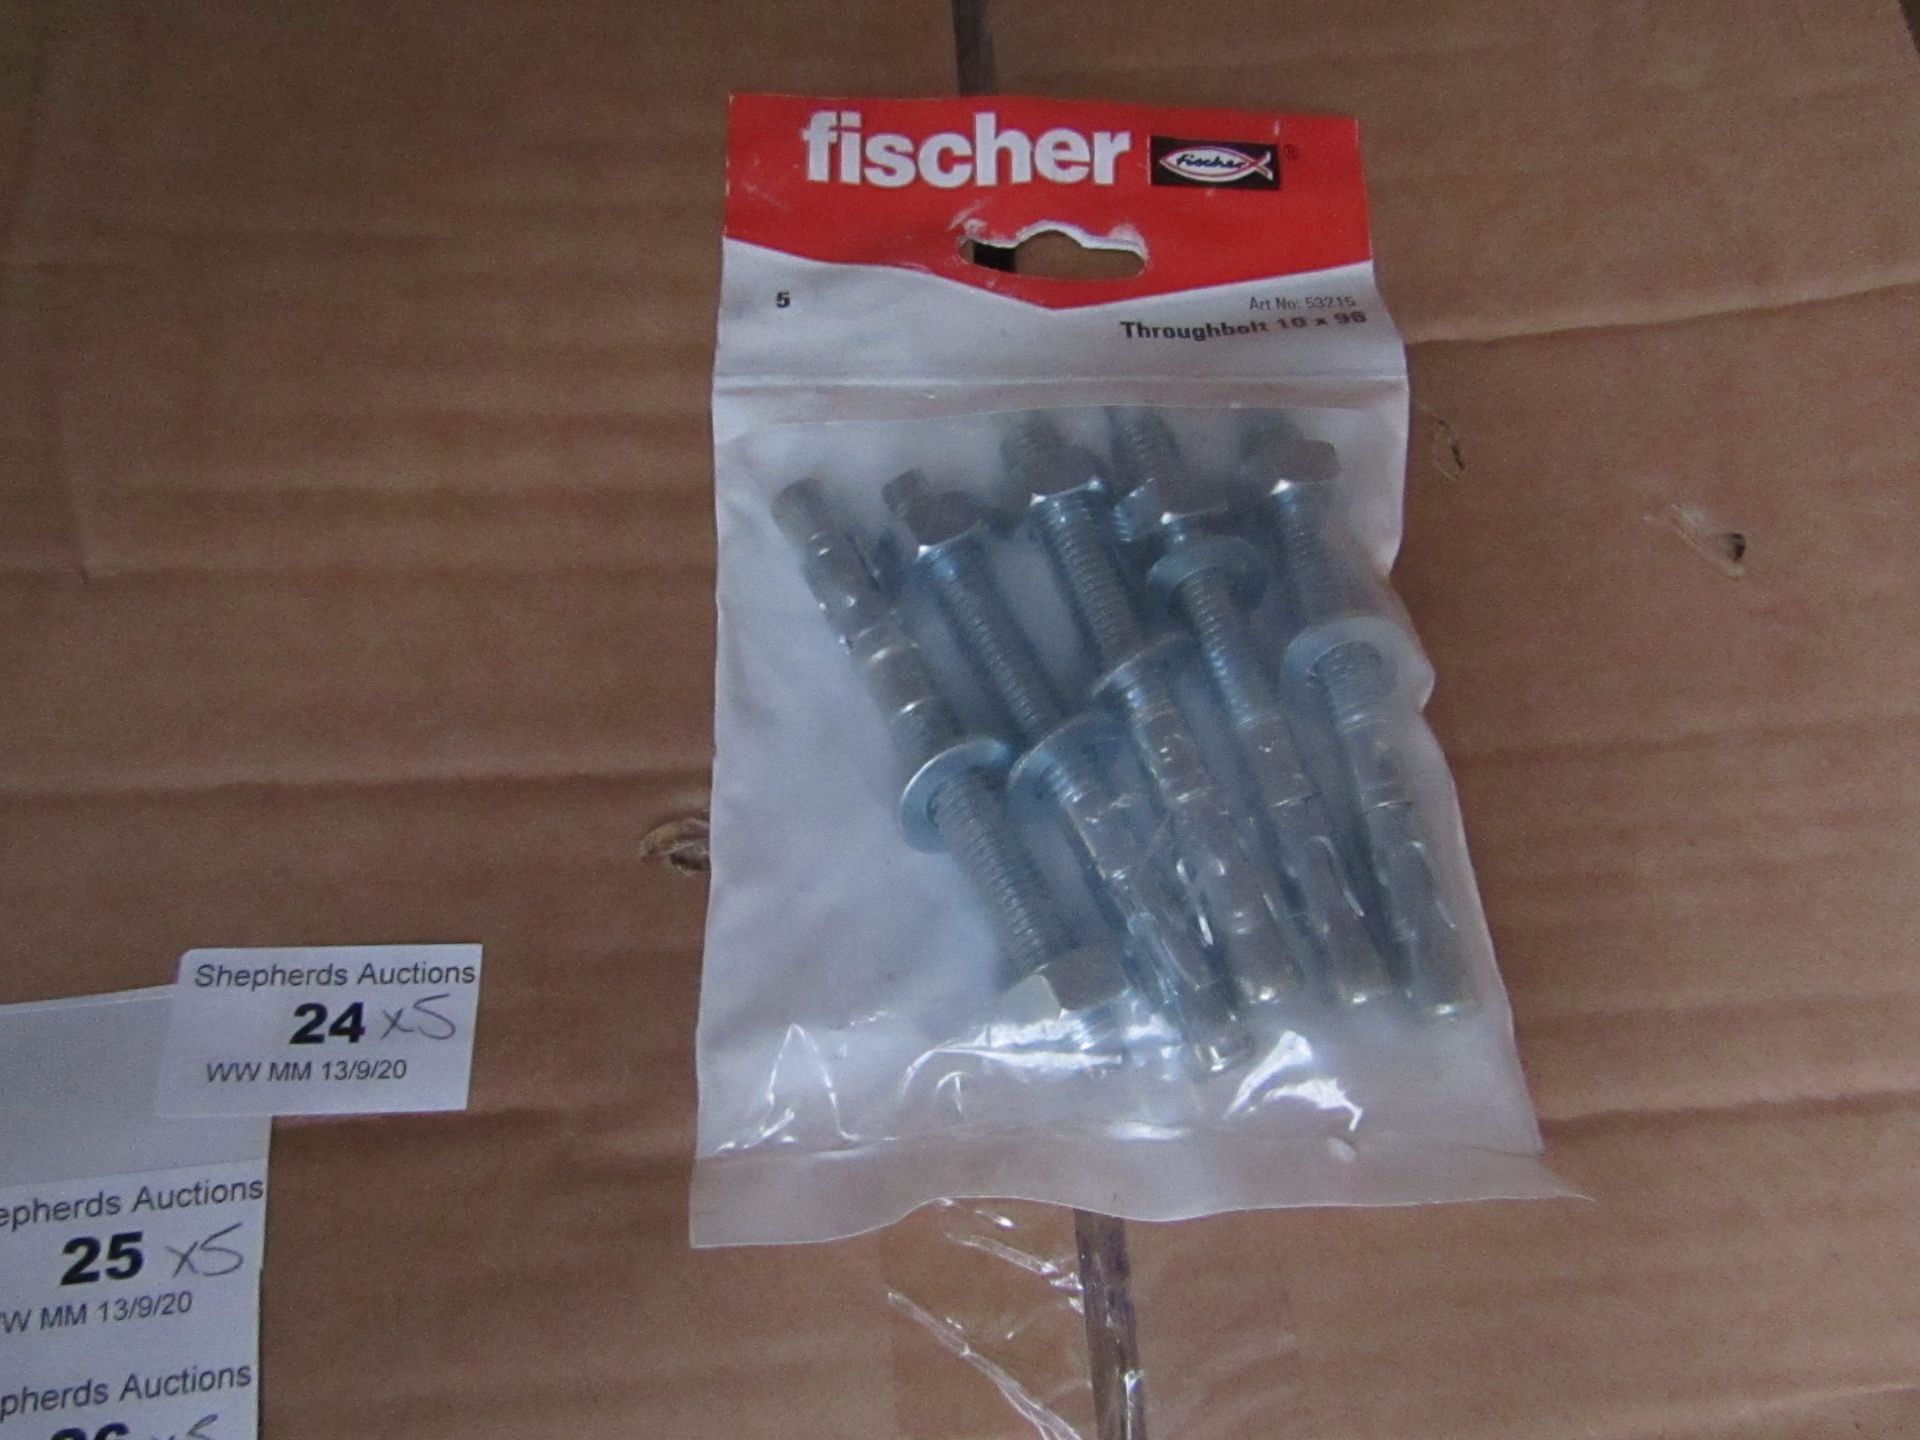 5x Fischer - Throughbolt 10 x 96 (Packs of 5) - New & Packaged.